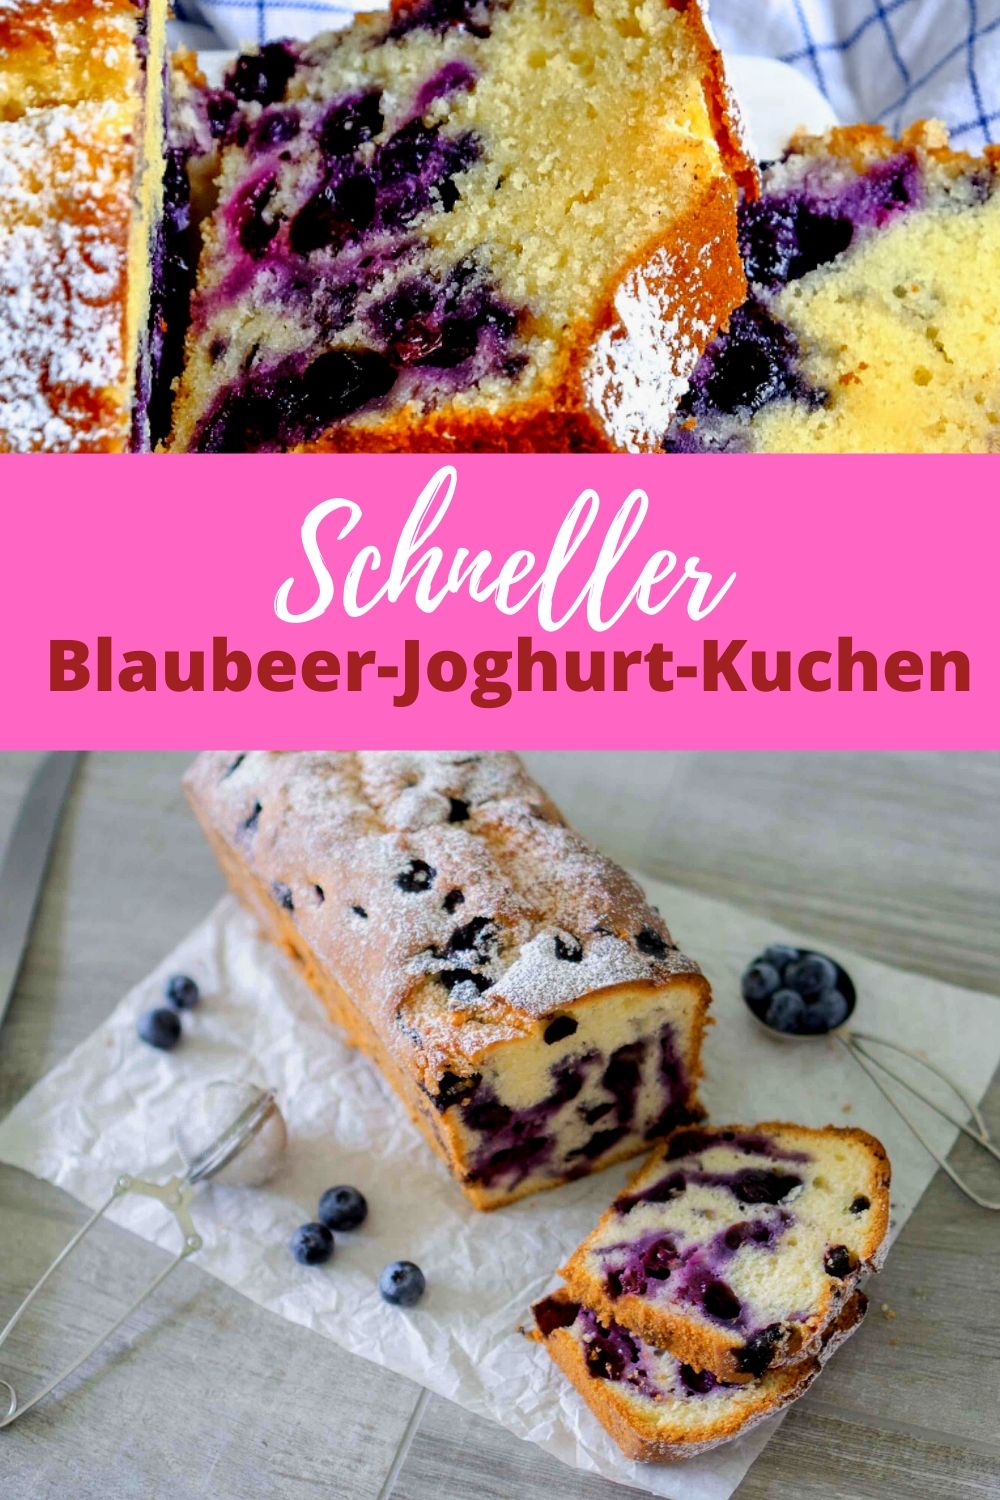 Schneller Blaubeer-Joghurt-Kuchen | New Recipe